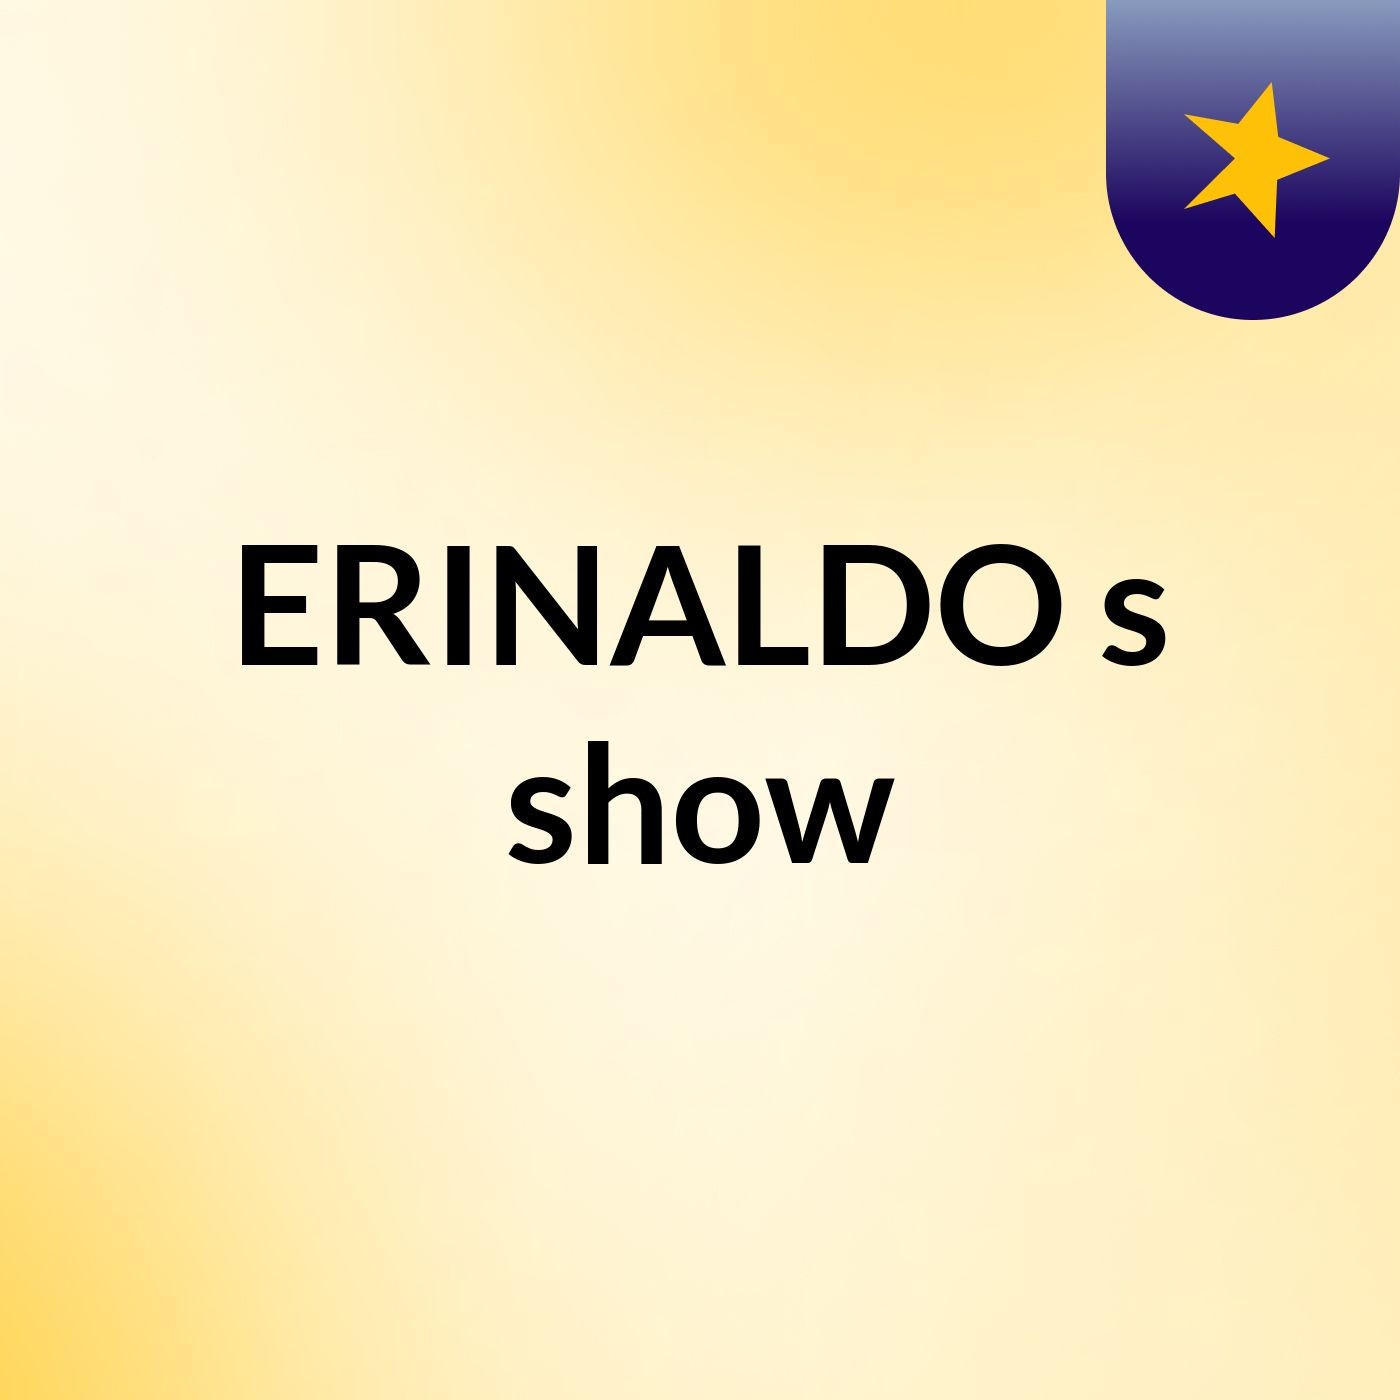 ERINALDO's show